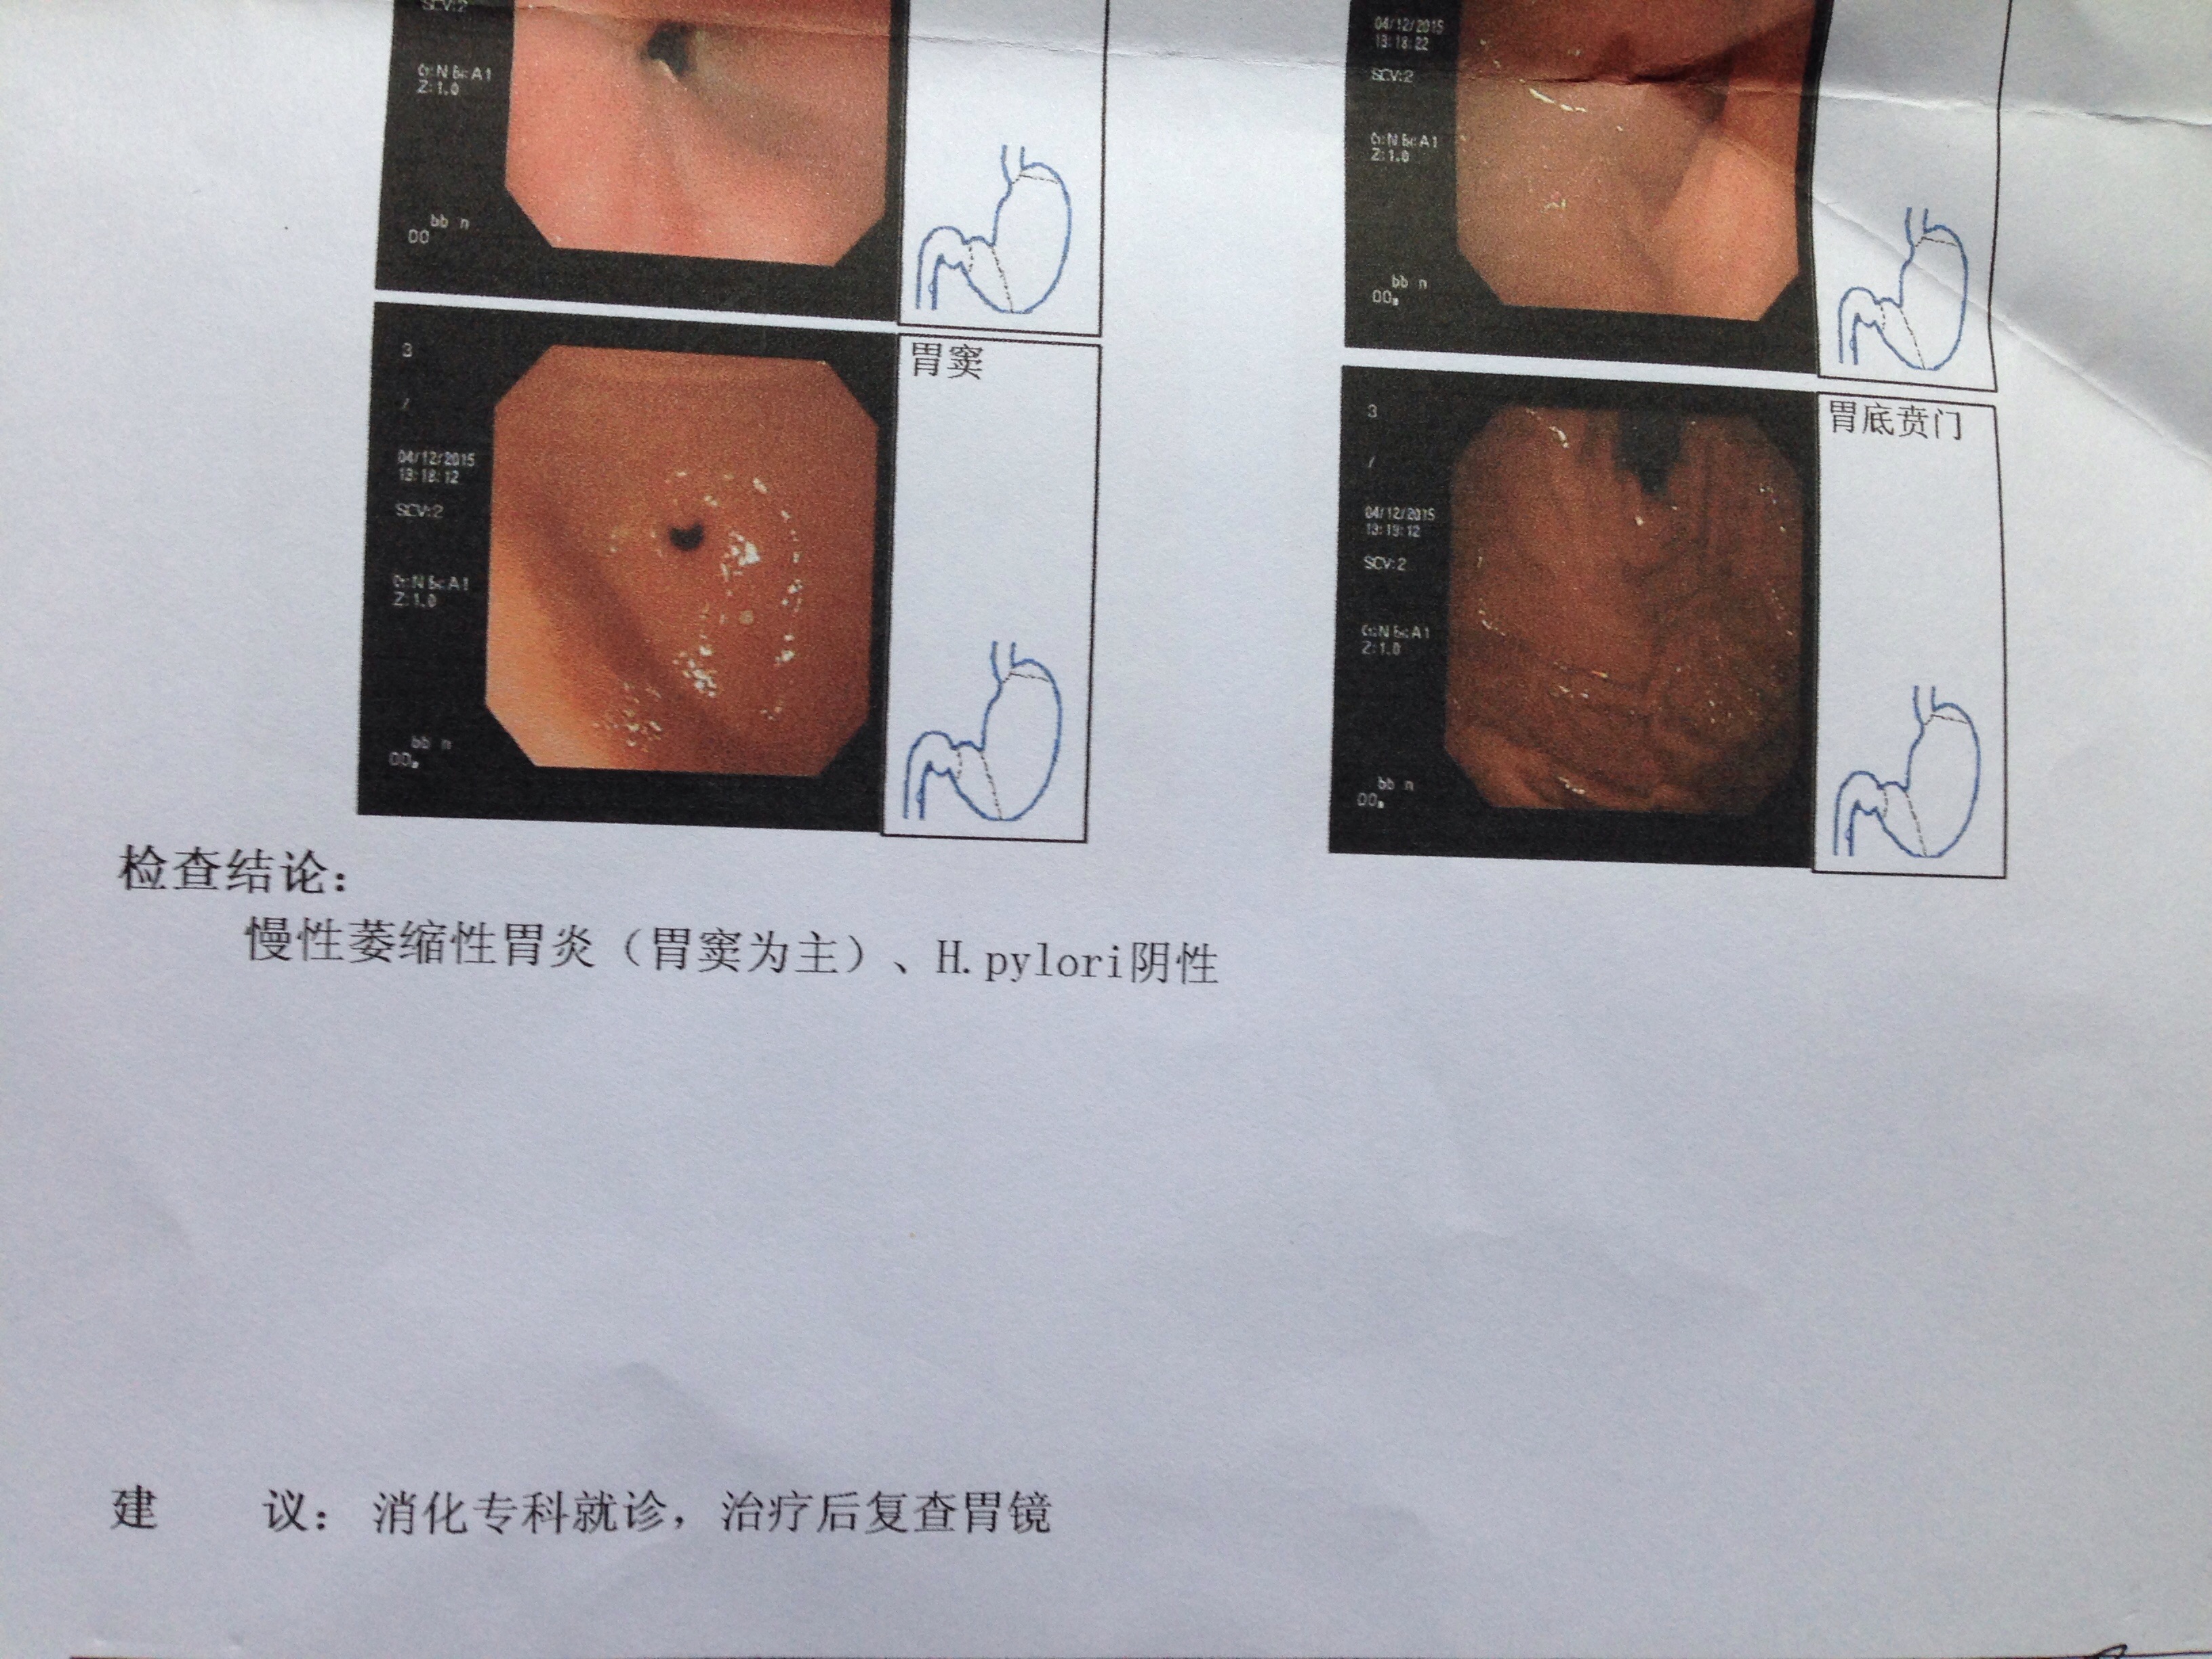 胃癌中期胃镜单子图片图片